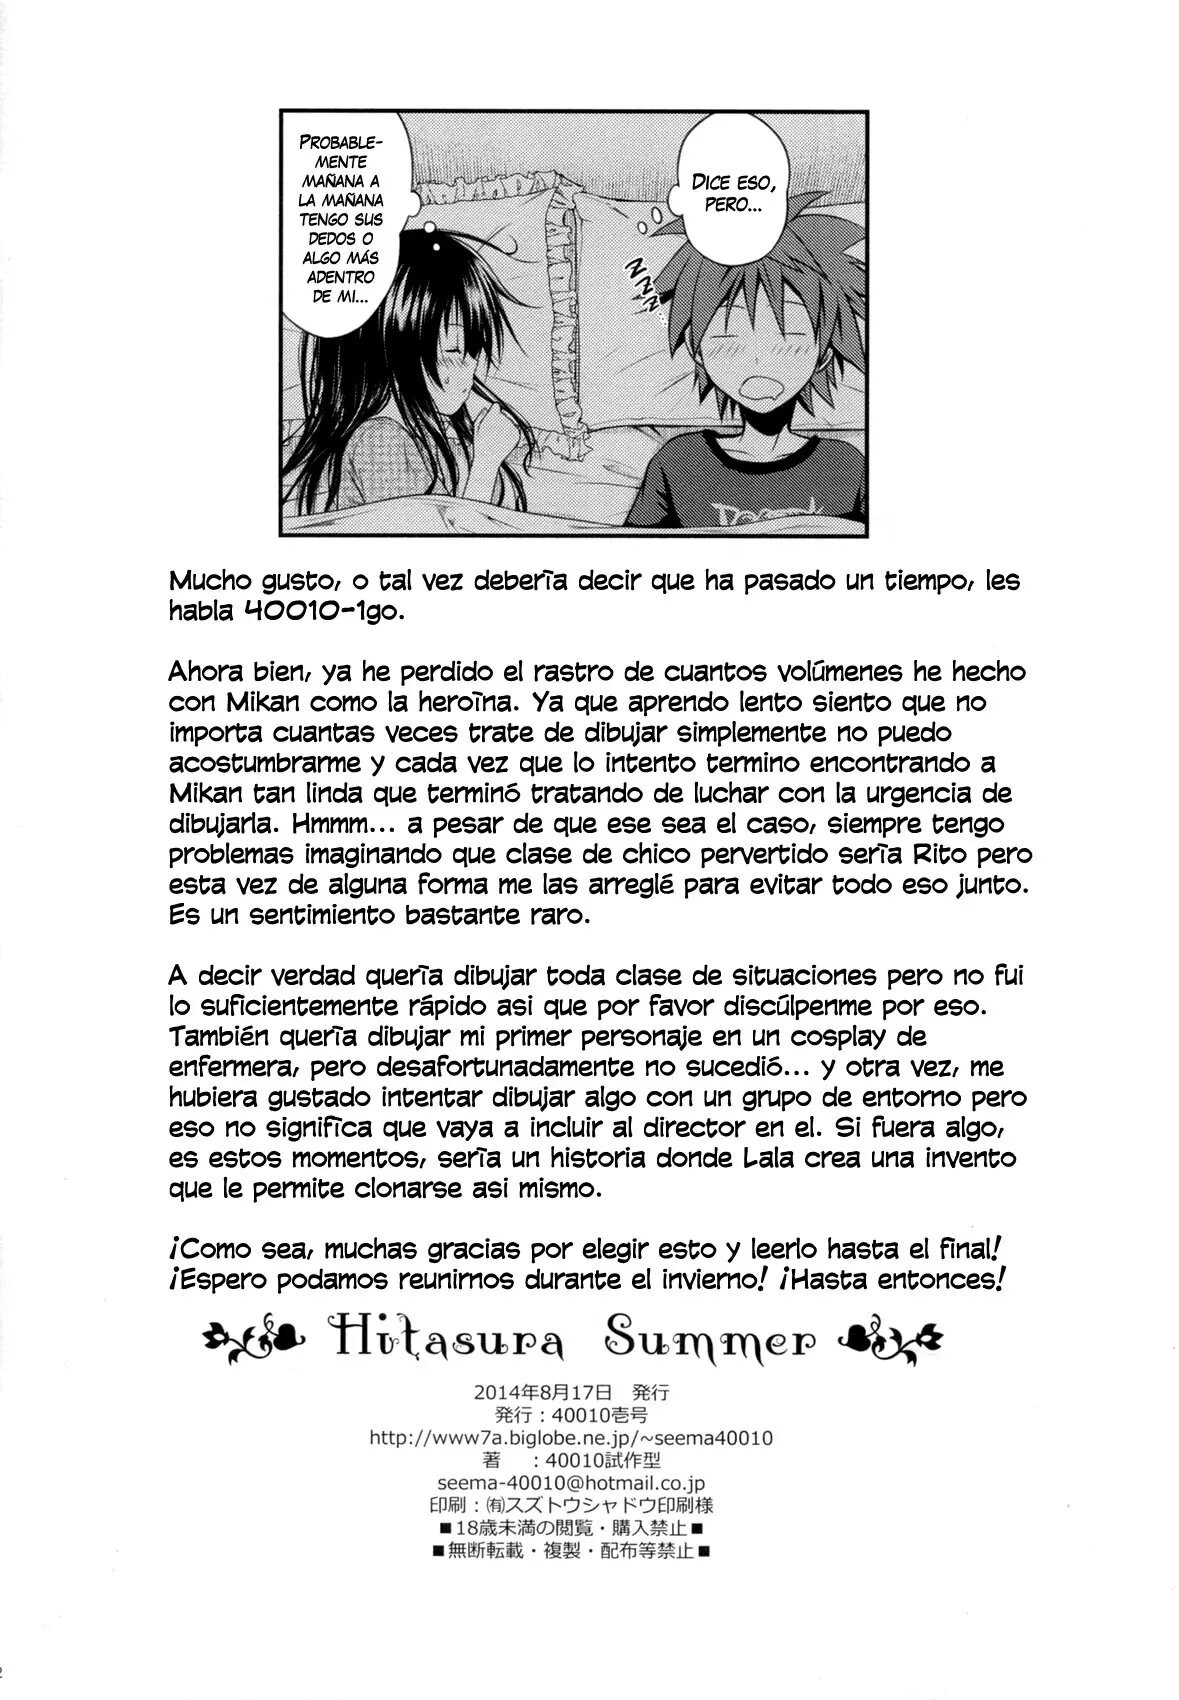 Hitasura Summer - 20